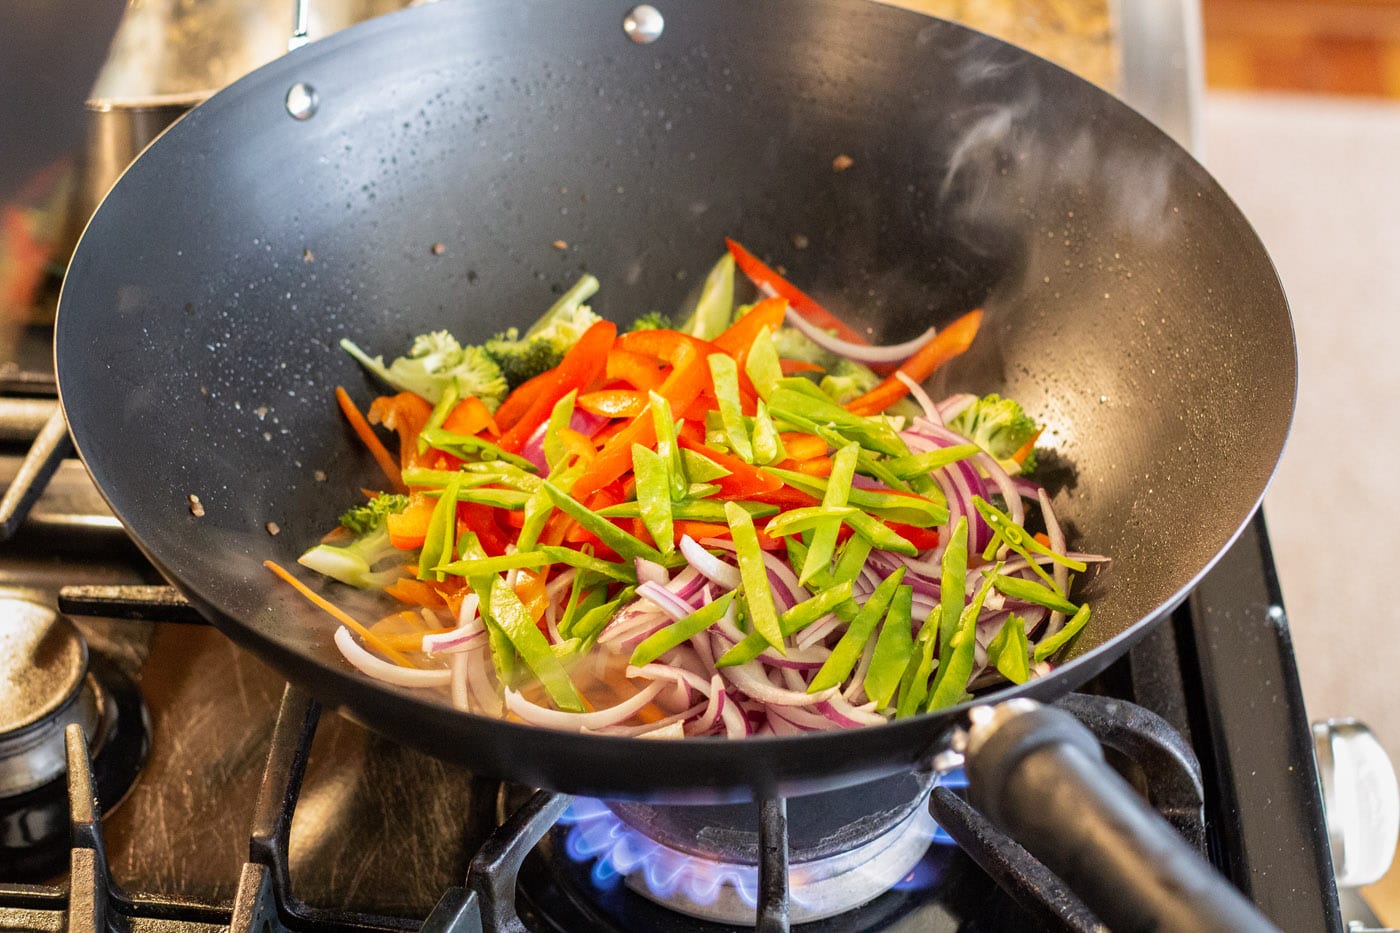 stir fry veggies in a wok